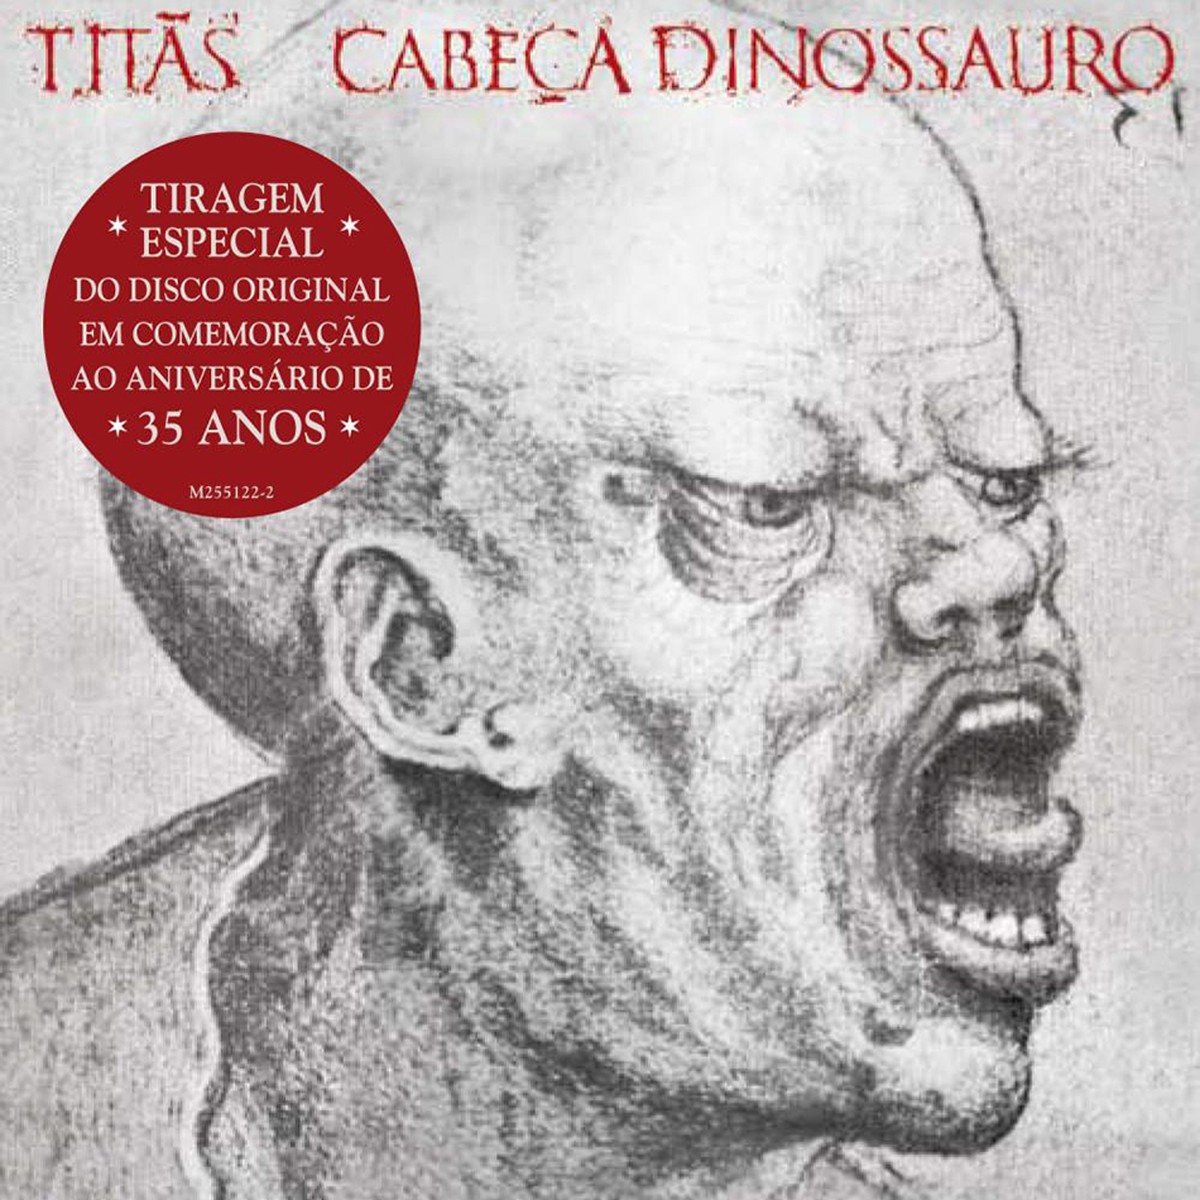 Disco histórico dos Titãs, ‘Cabeça dinossauro’ é reeditado em CD para marcar os 35 anos do álbum de 1986 | Blog do Mauro Ferreira